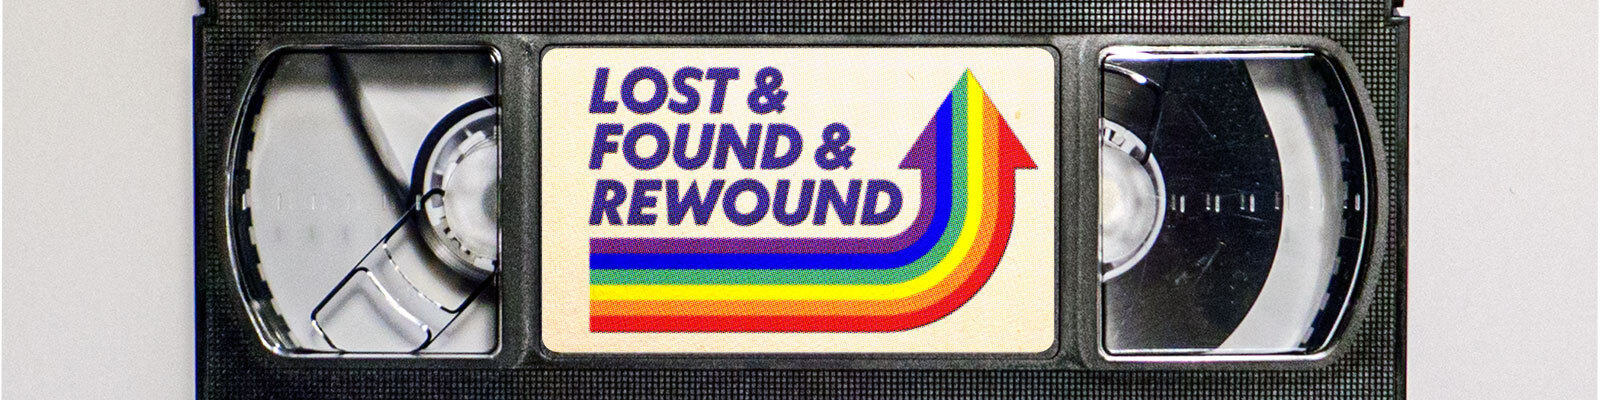 Lost & Found & Rewound